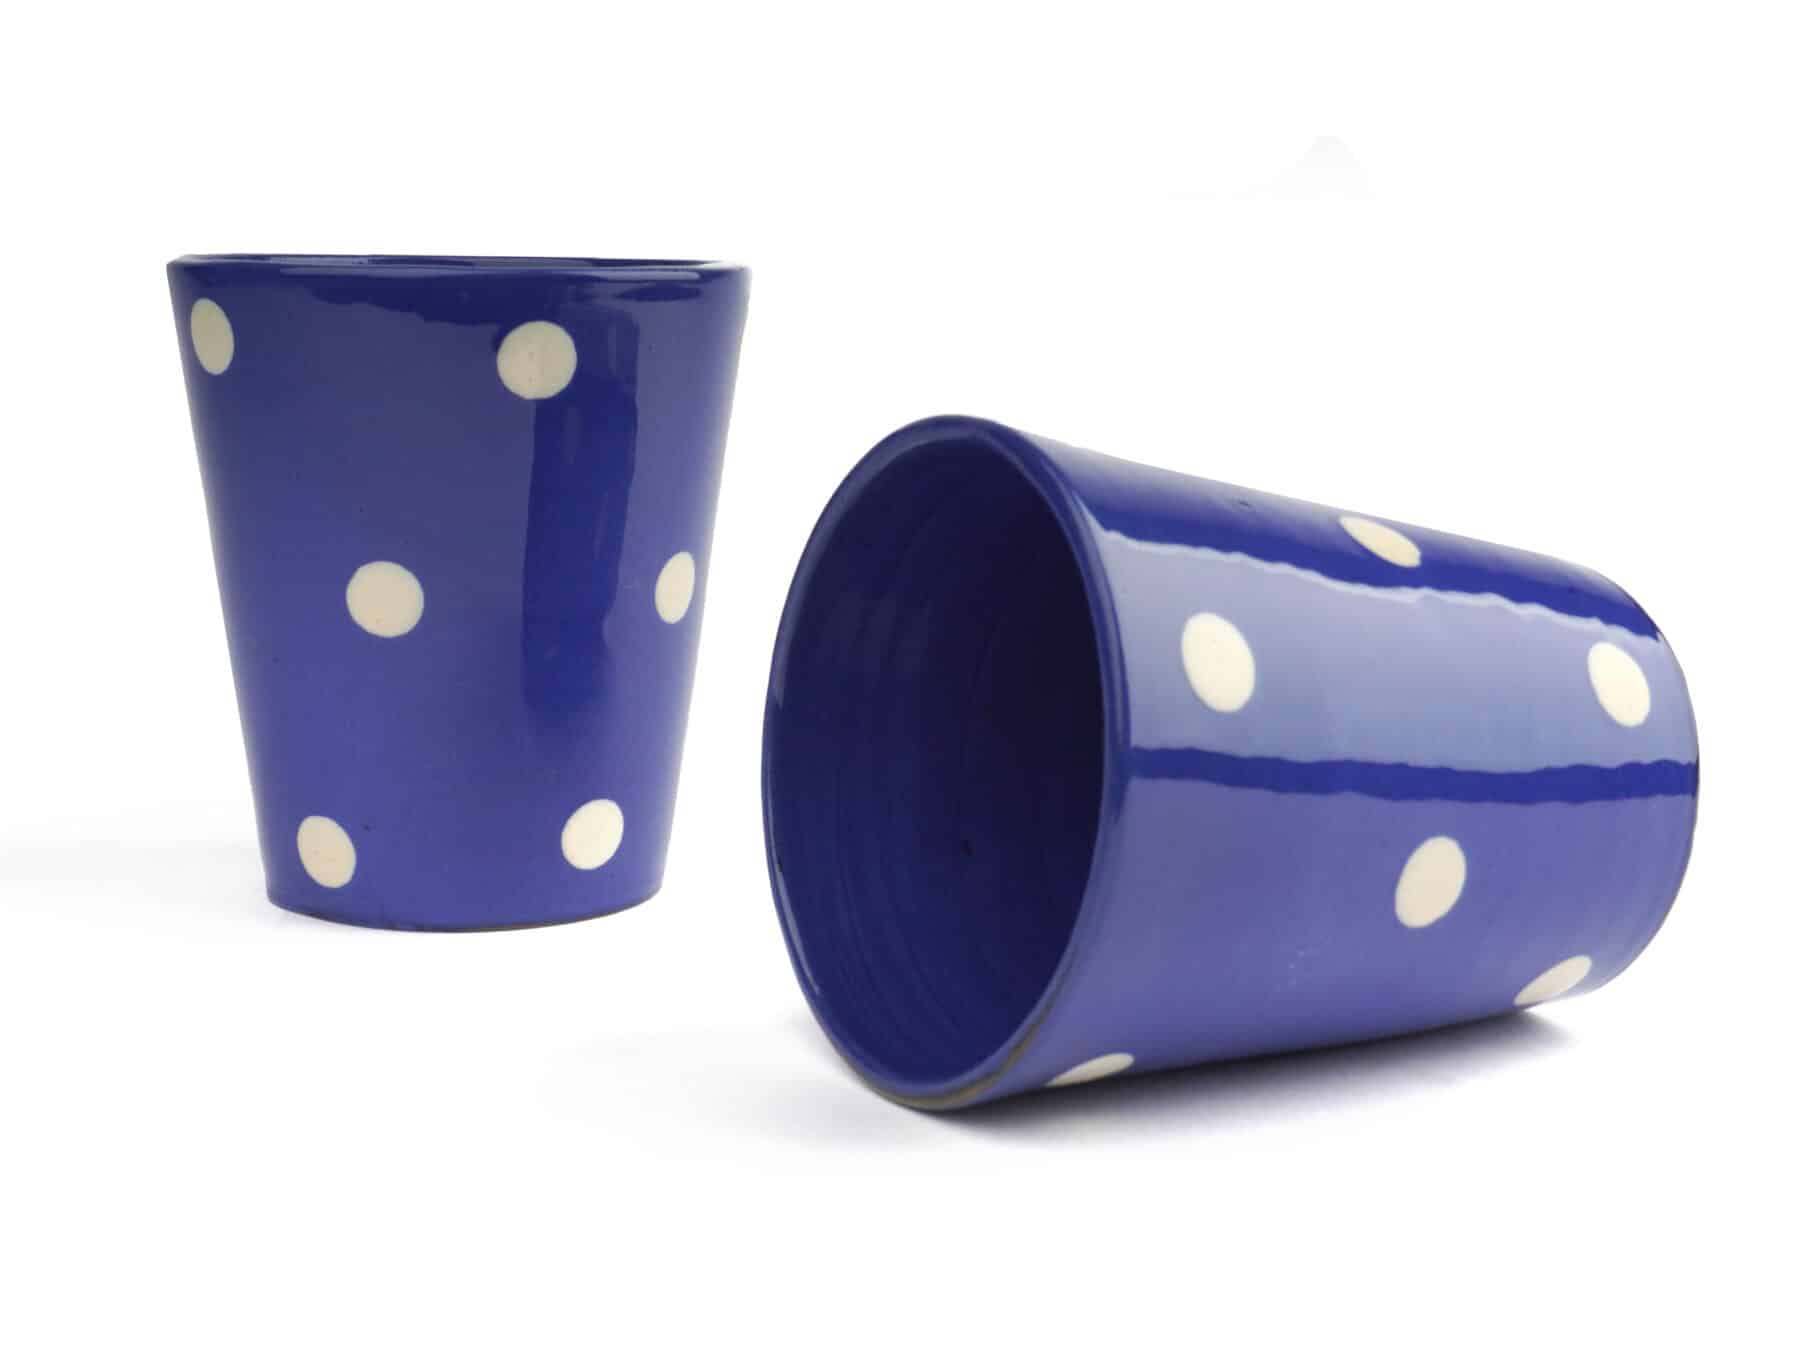 Becher Keramik 3.5dl Tupfen blau weiss swiss made